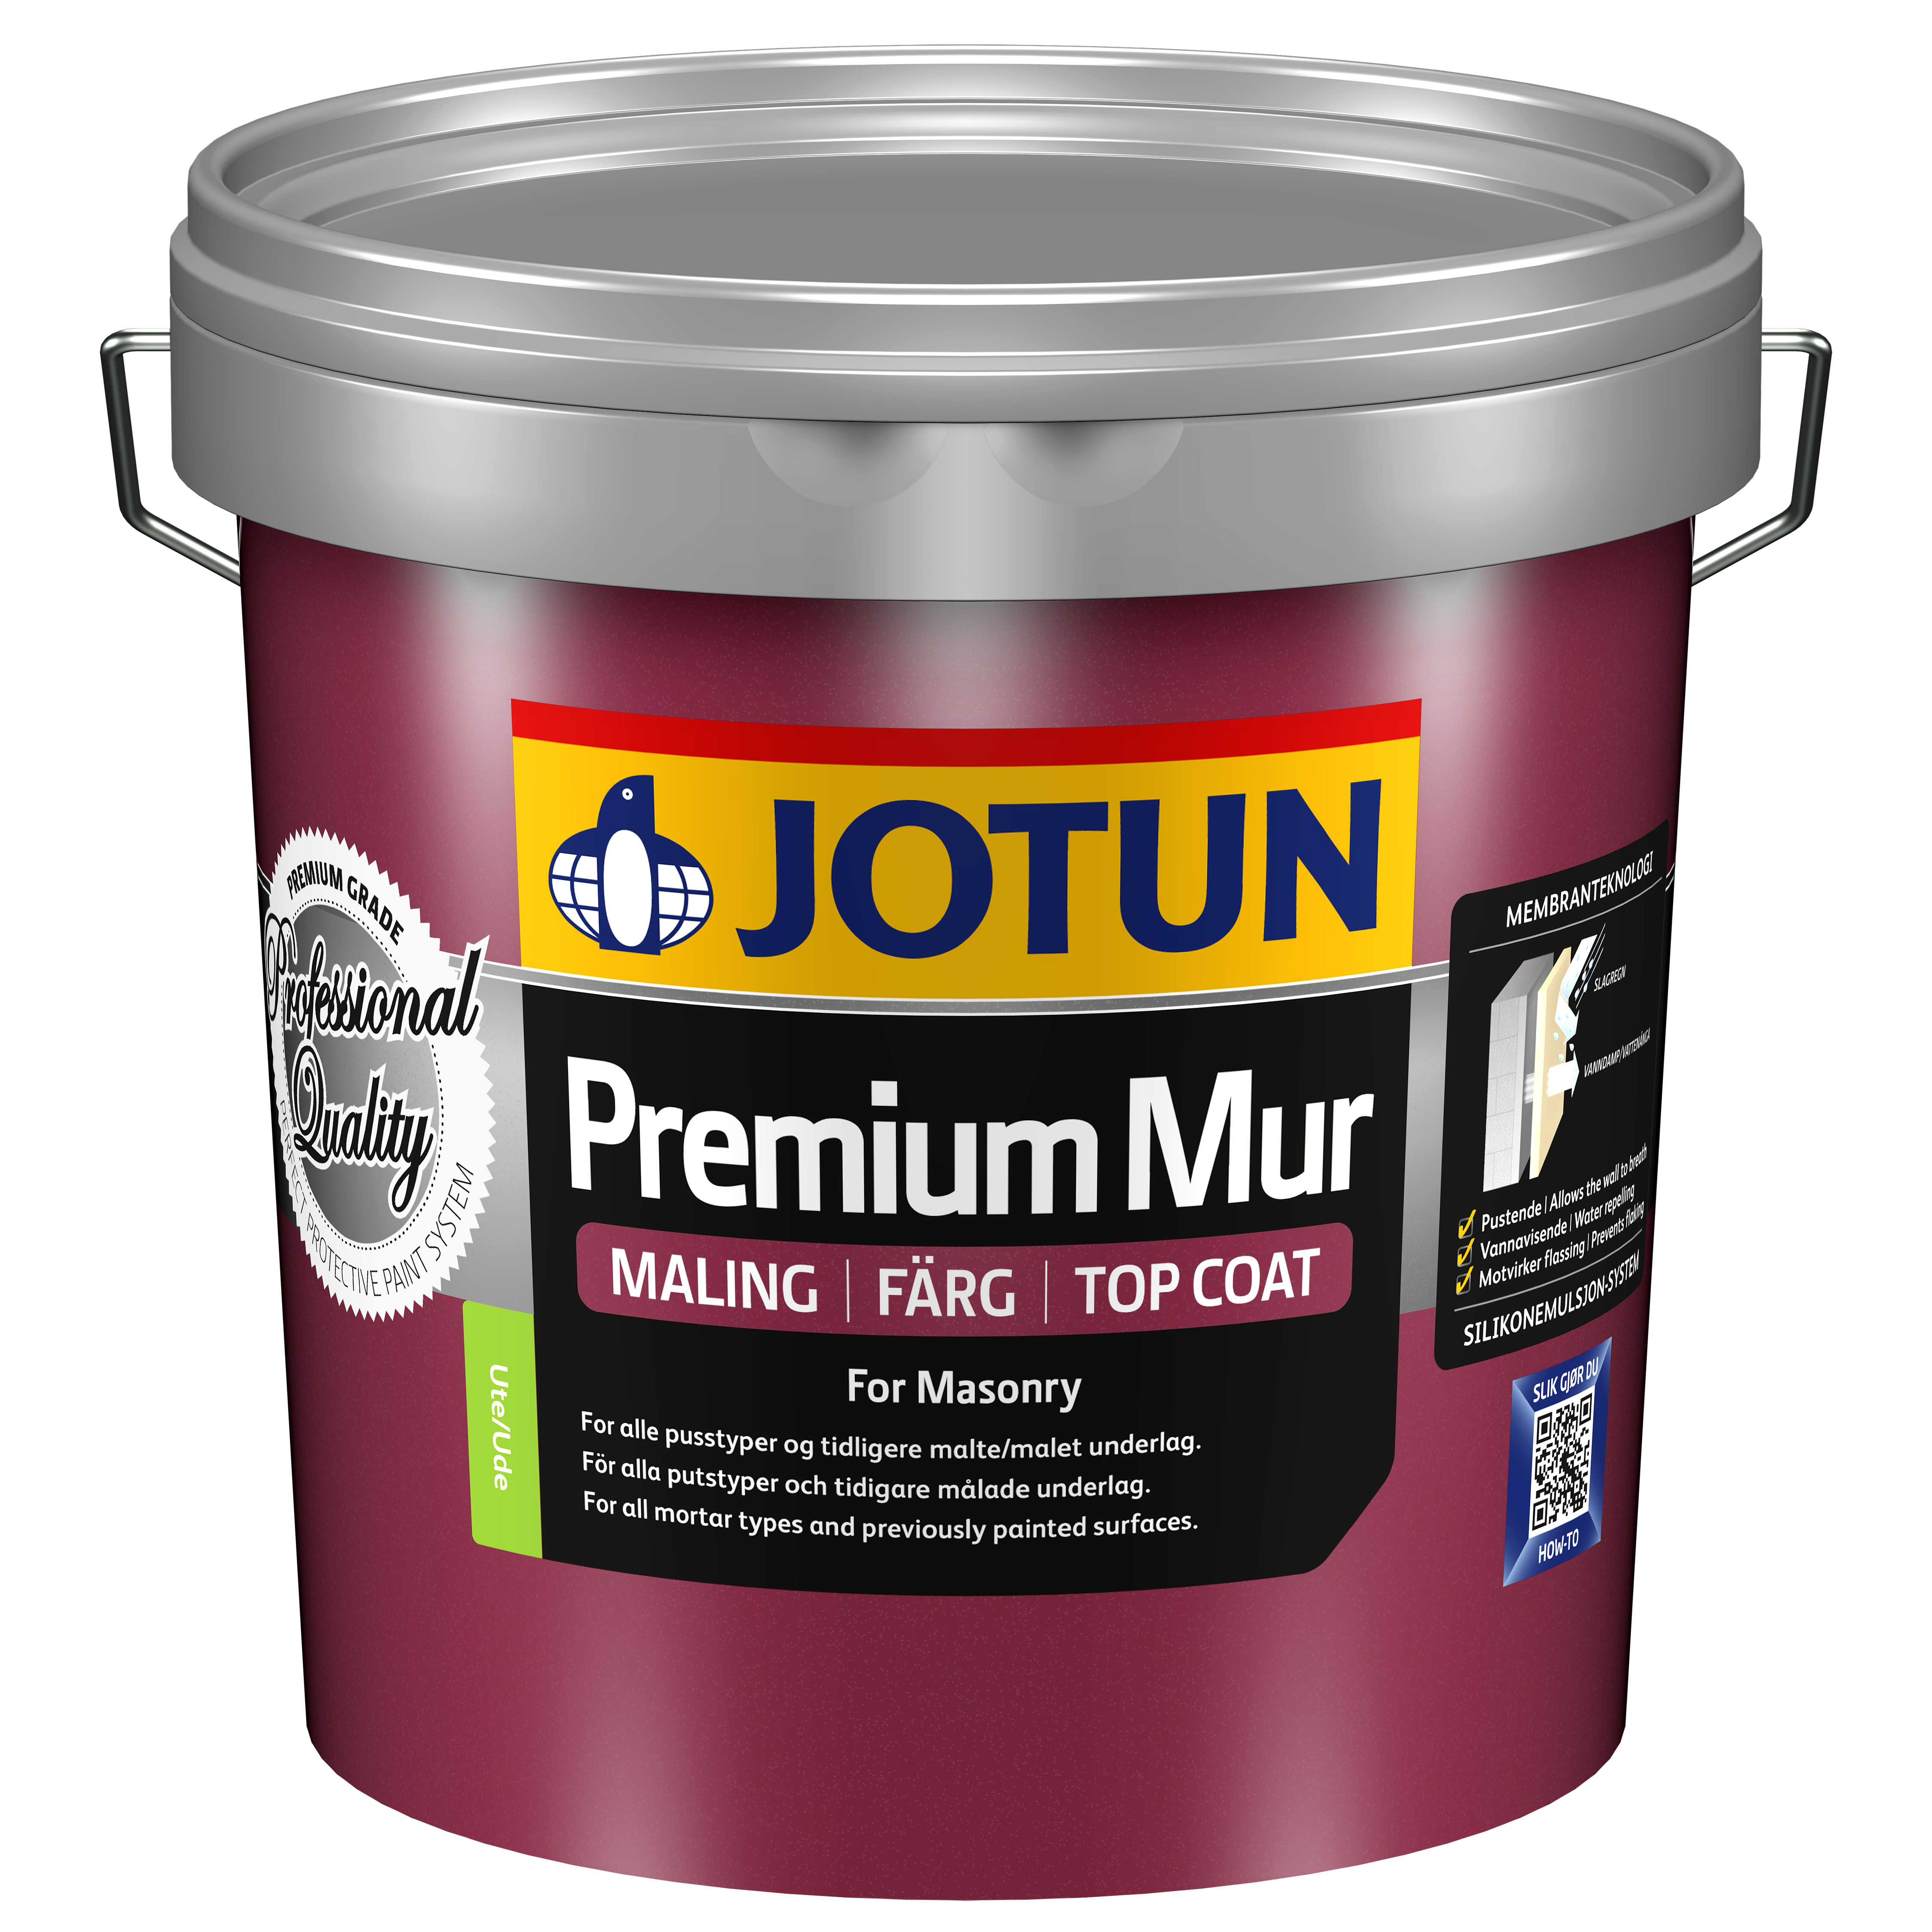 Jotun Premium Murmaling